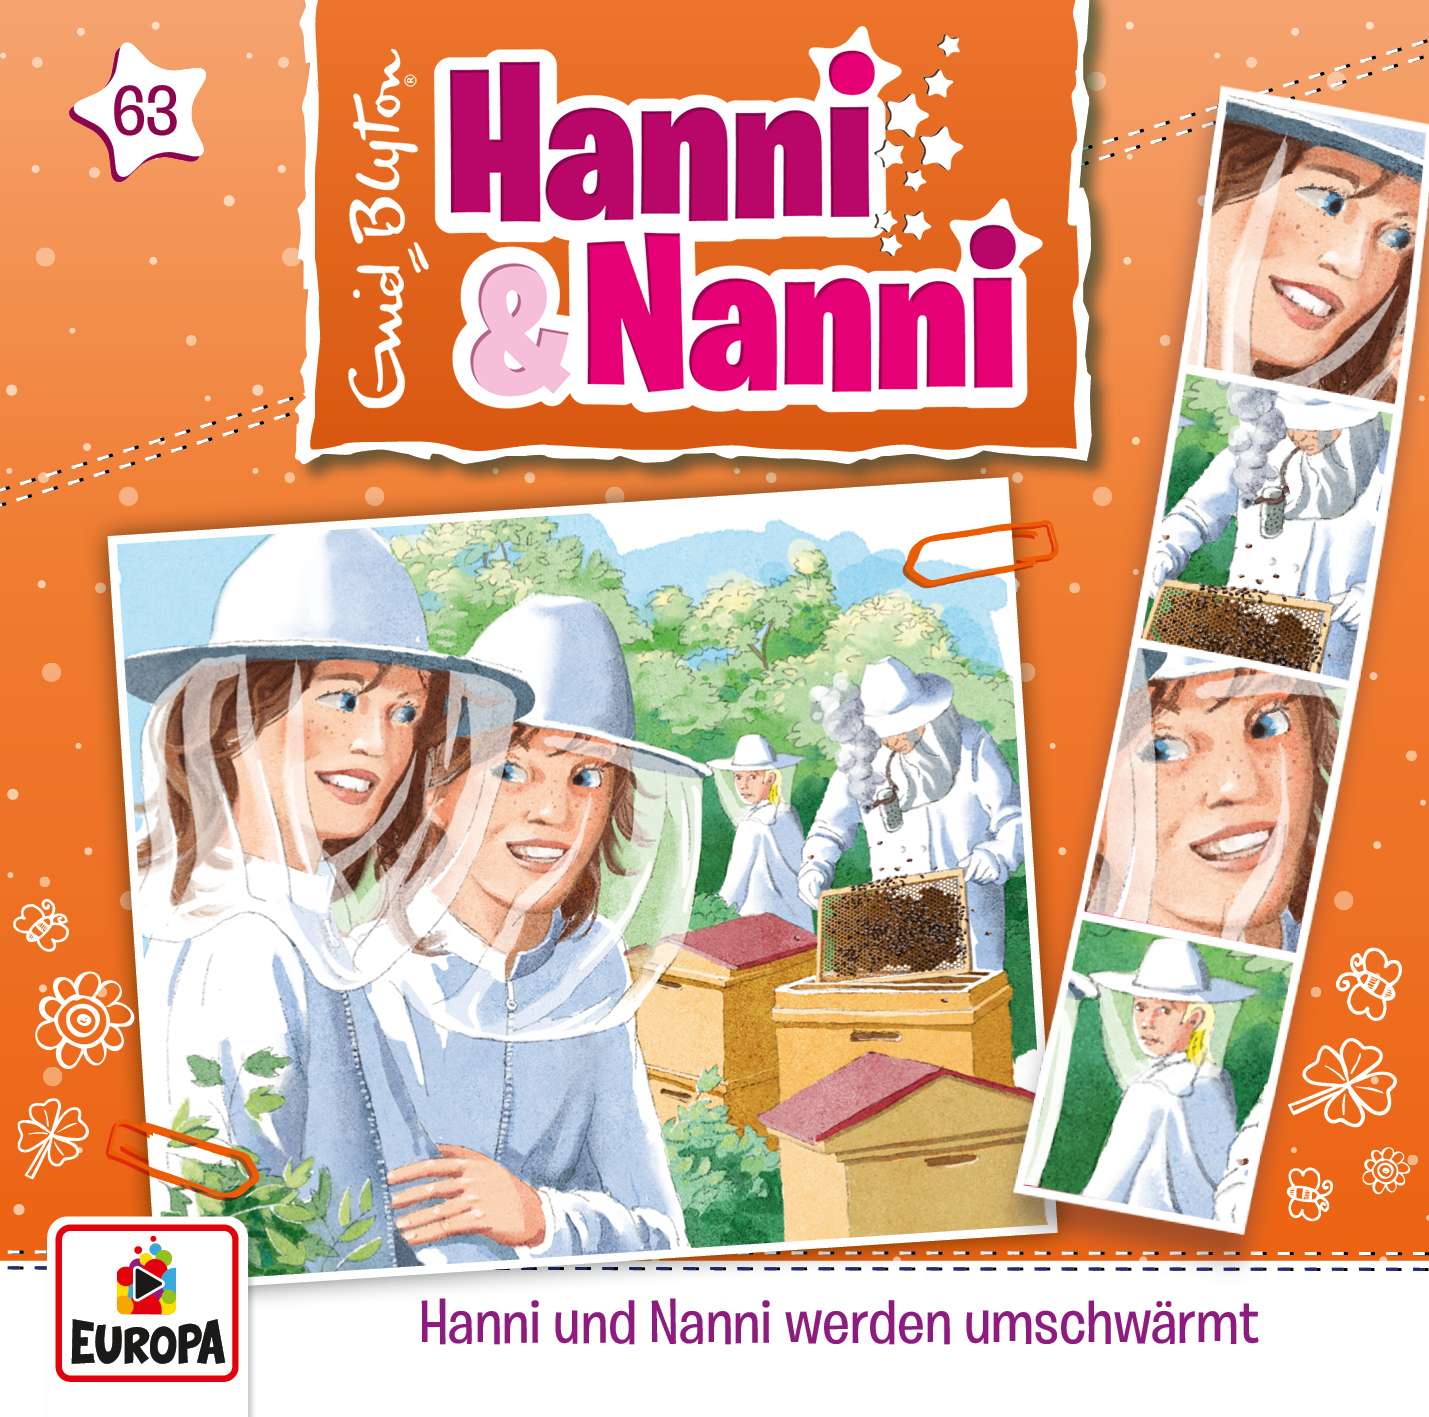 Hanni und Nanni: Hanni & Nanni werden umschwärmt